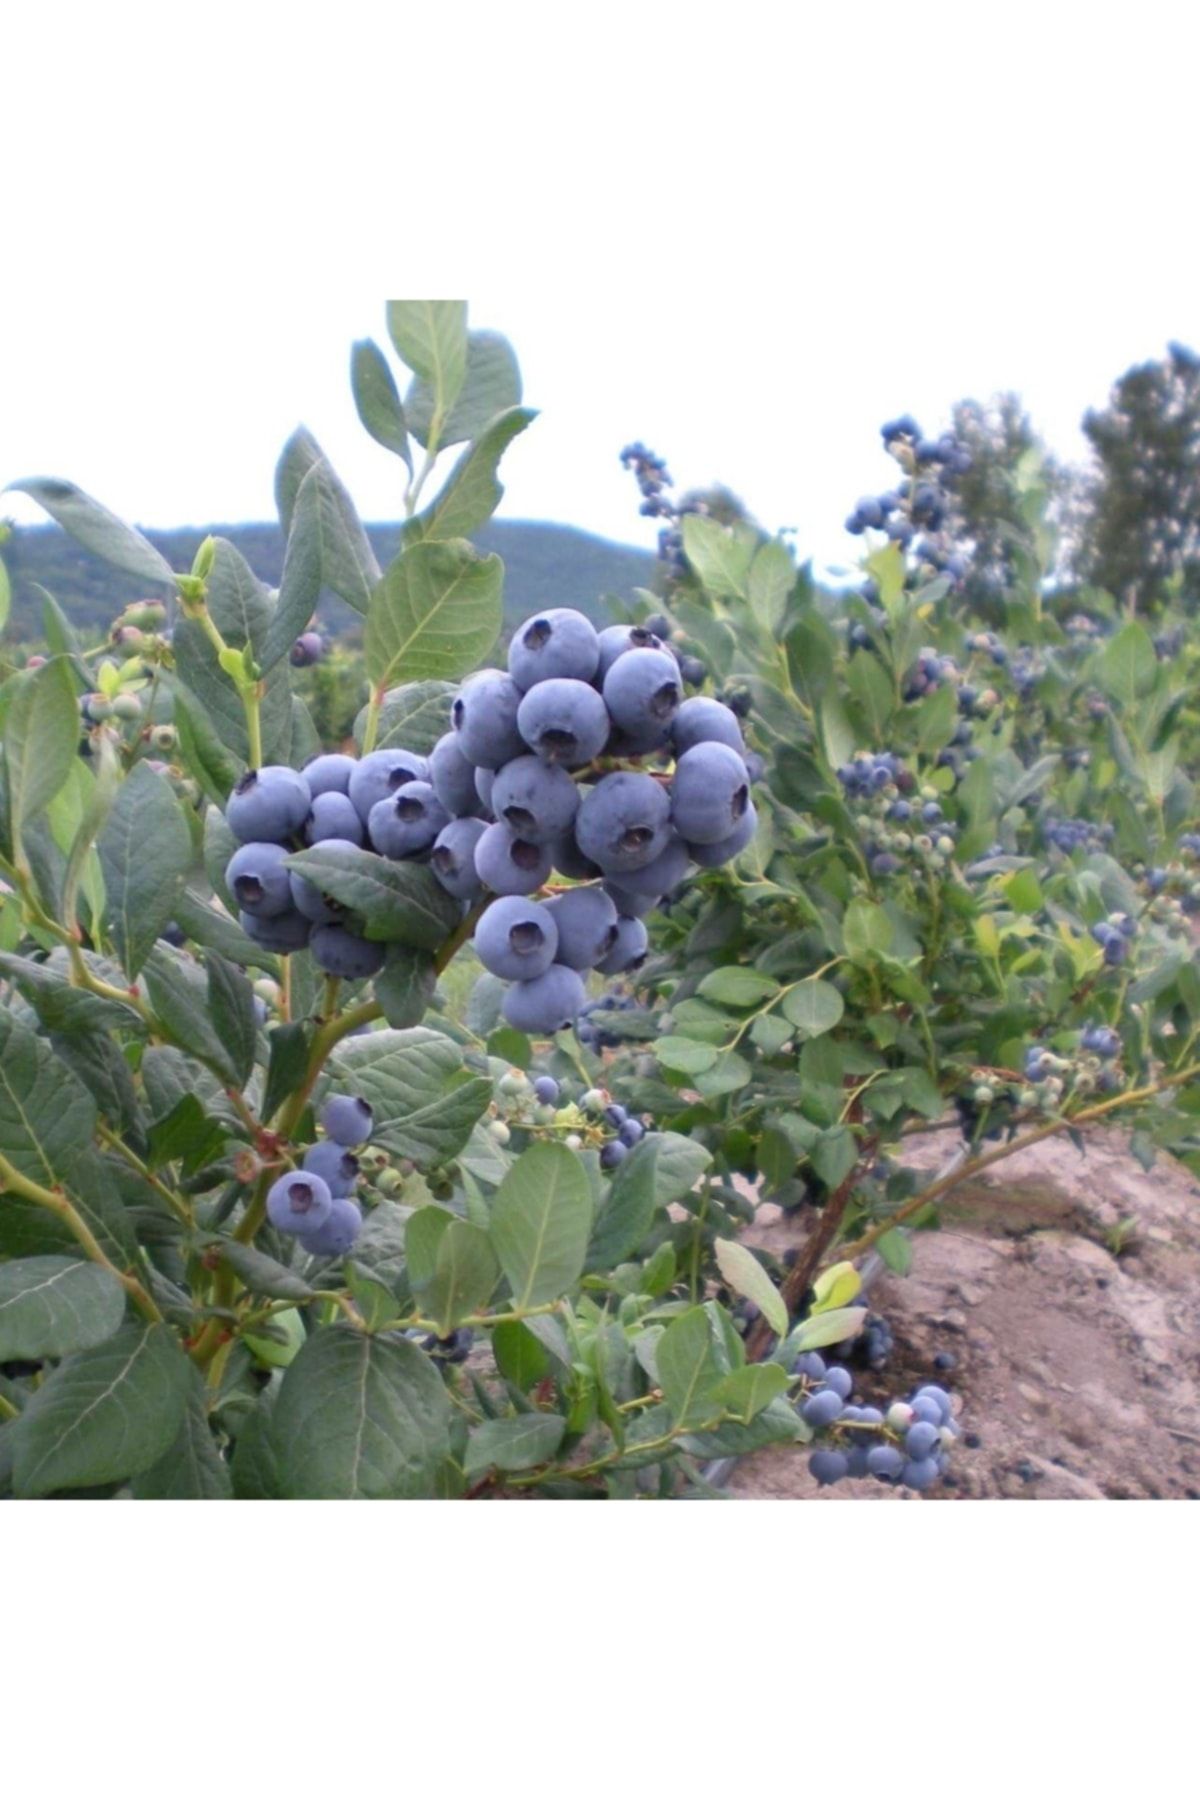 GojiberryTürkiye Gojiberry Turkiye Yaban Mersini Fidanı Mavi Yemiş Blueberry 2 Yaş 30-40 Cm